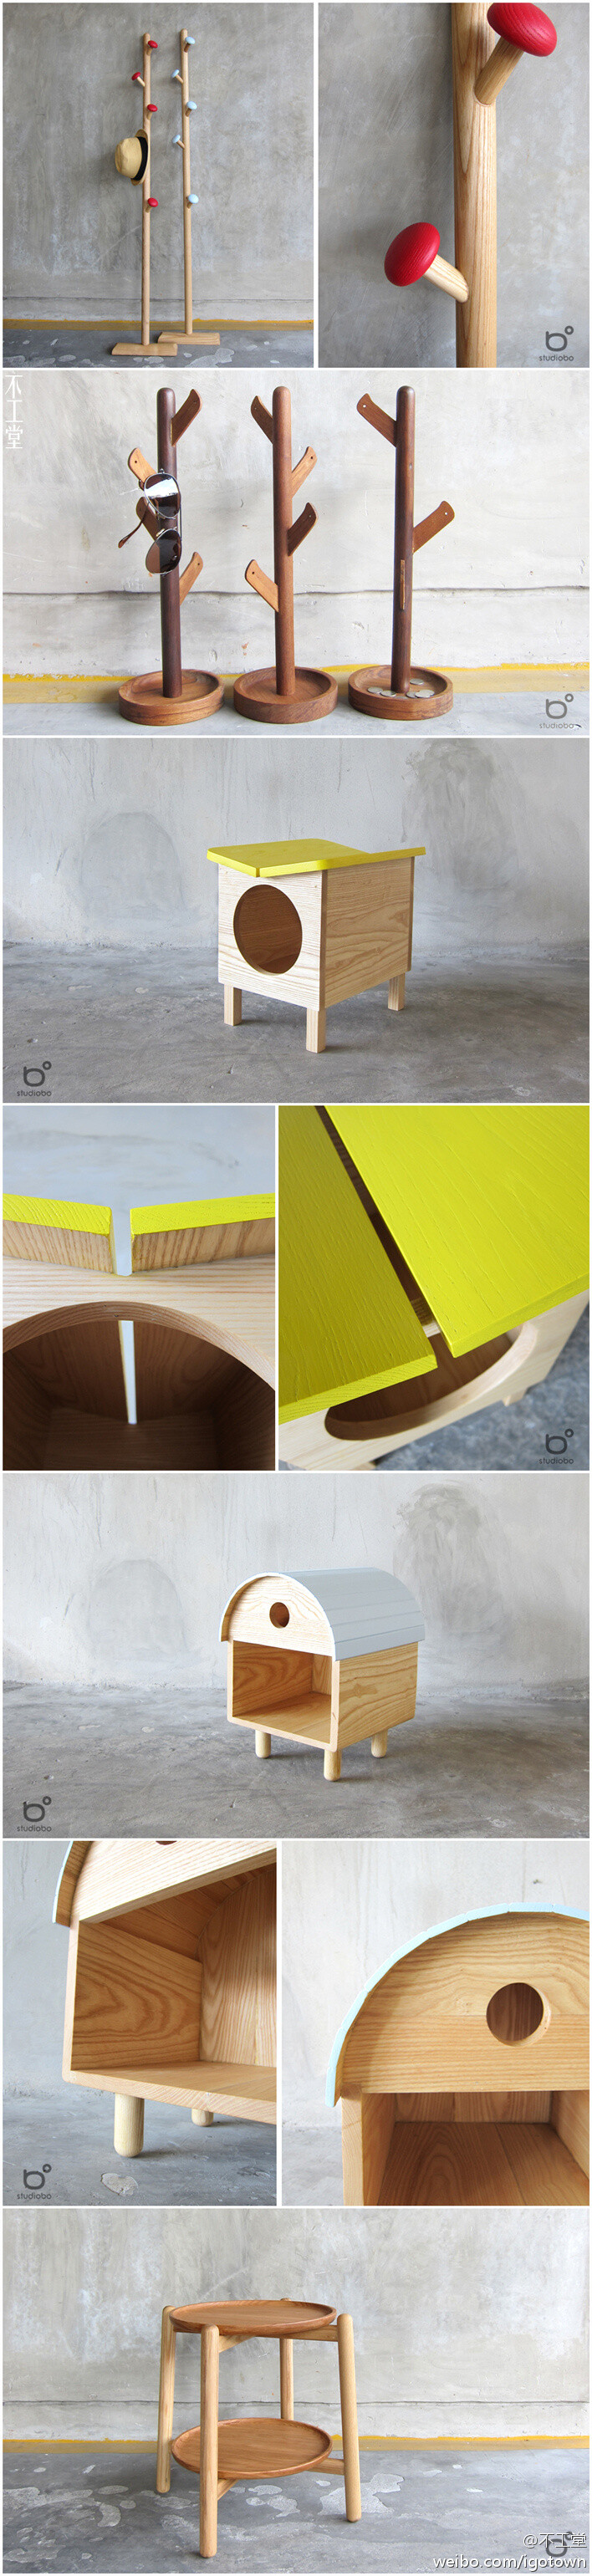 泰国的设计组合studiobo最近出品了一些木质小家具，诸如衣架、猫屋之类，都是些有爱心的设计，不复杂但挺有趣，让我们一起看看！